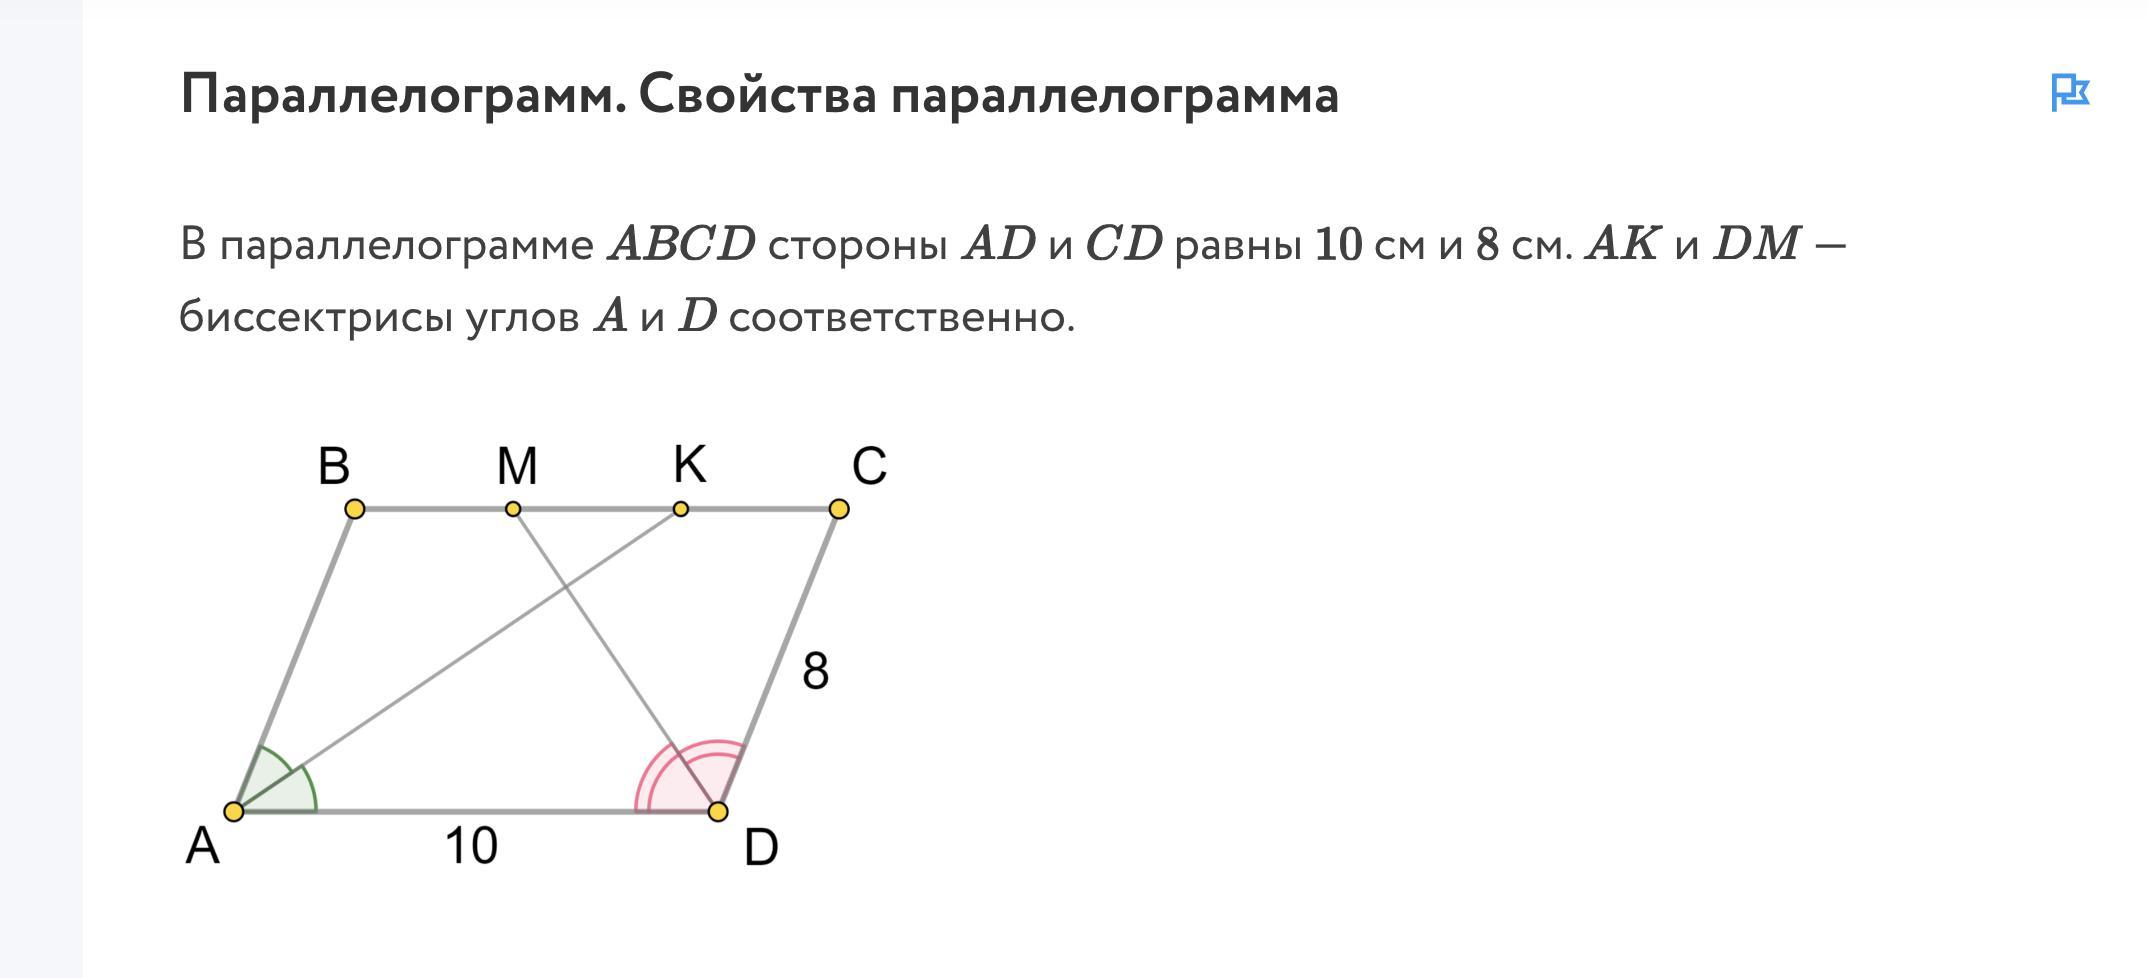 В параллелограмме abcd известны координаты трех вершин. Если в параллелограмме две соседние стороны равны.